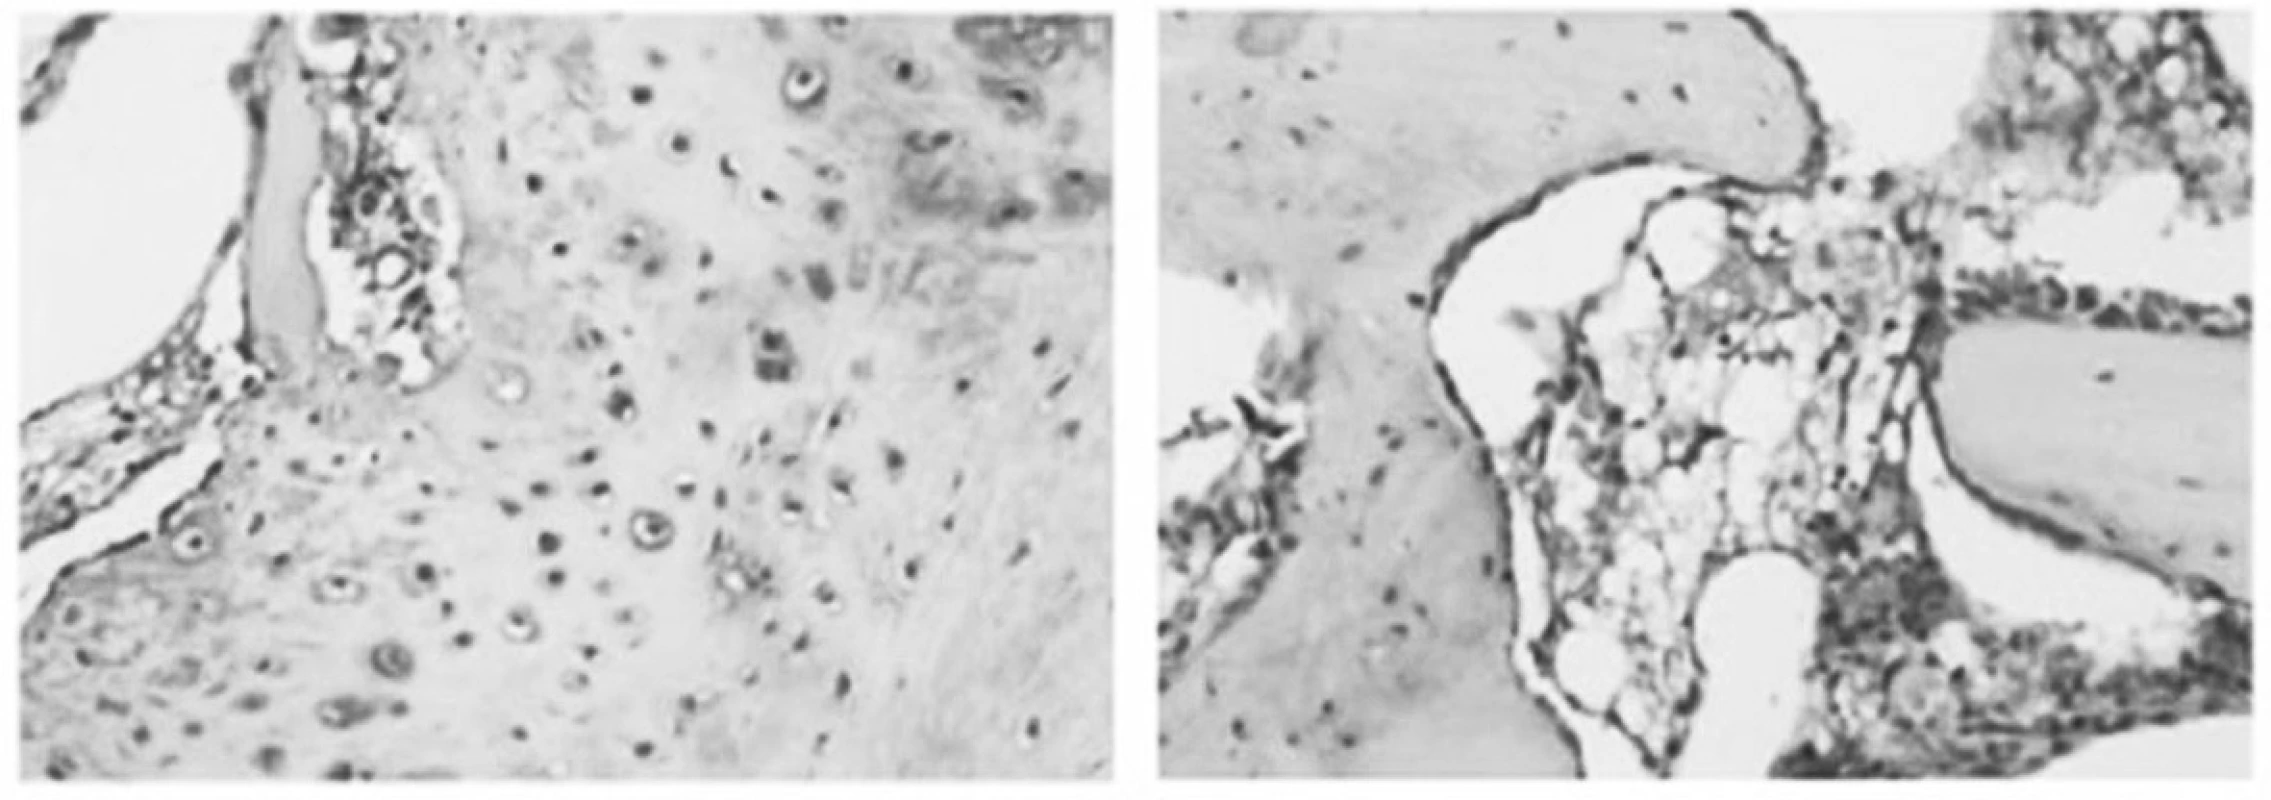 Koncentrace von Willebrandova faktoru /vWF/ v imunohistochemickém nálezu. vWF autor považuje jako marker angiogeneze. Jeho koncentrace je signifikantně zvýšena u ESWT skupiny /tmavé partikule na obrázku vlevo/ v porovnání s kontrolním souborem. (Převzato z Wang C. J. et al., Rheumatology, 2008.)